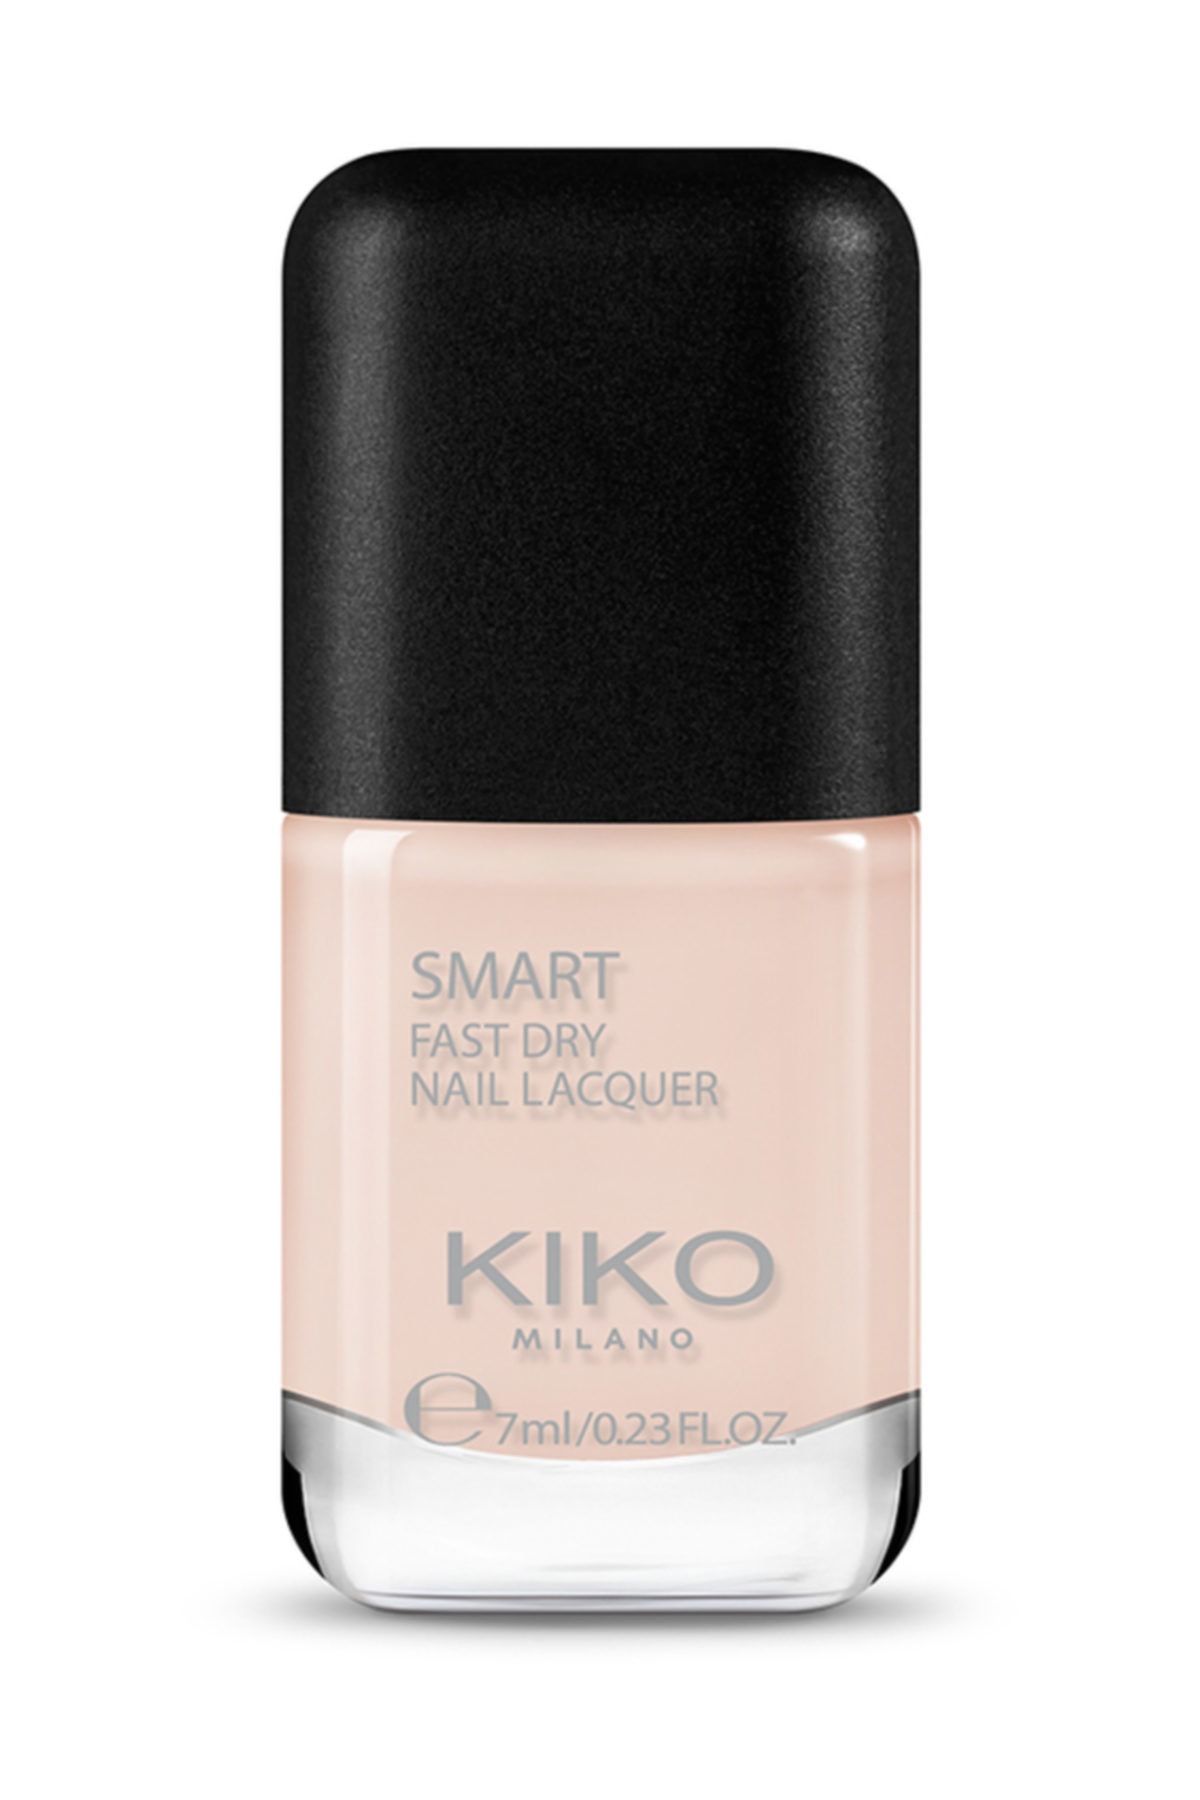 KIKO Smart Fast Dry Nail Lacquer 02 Oje